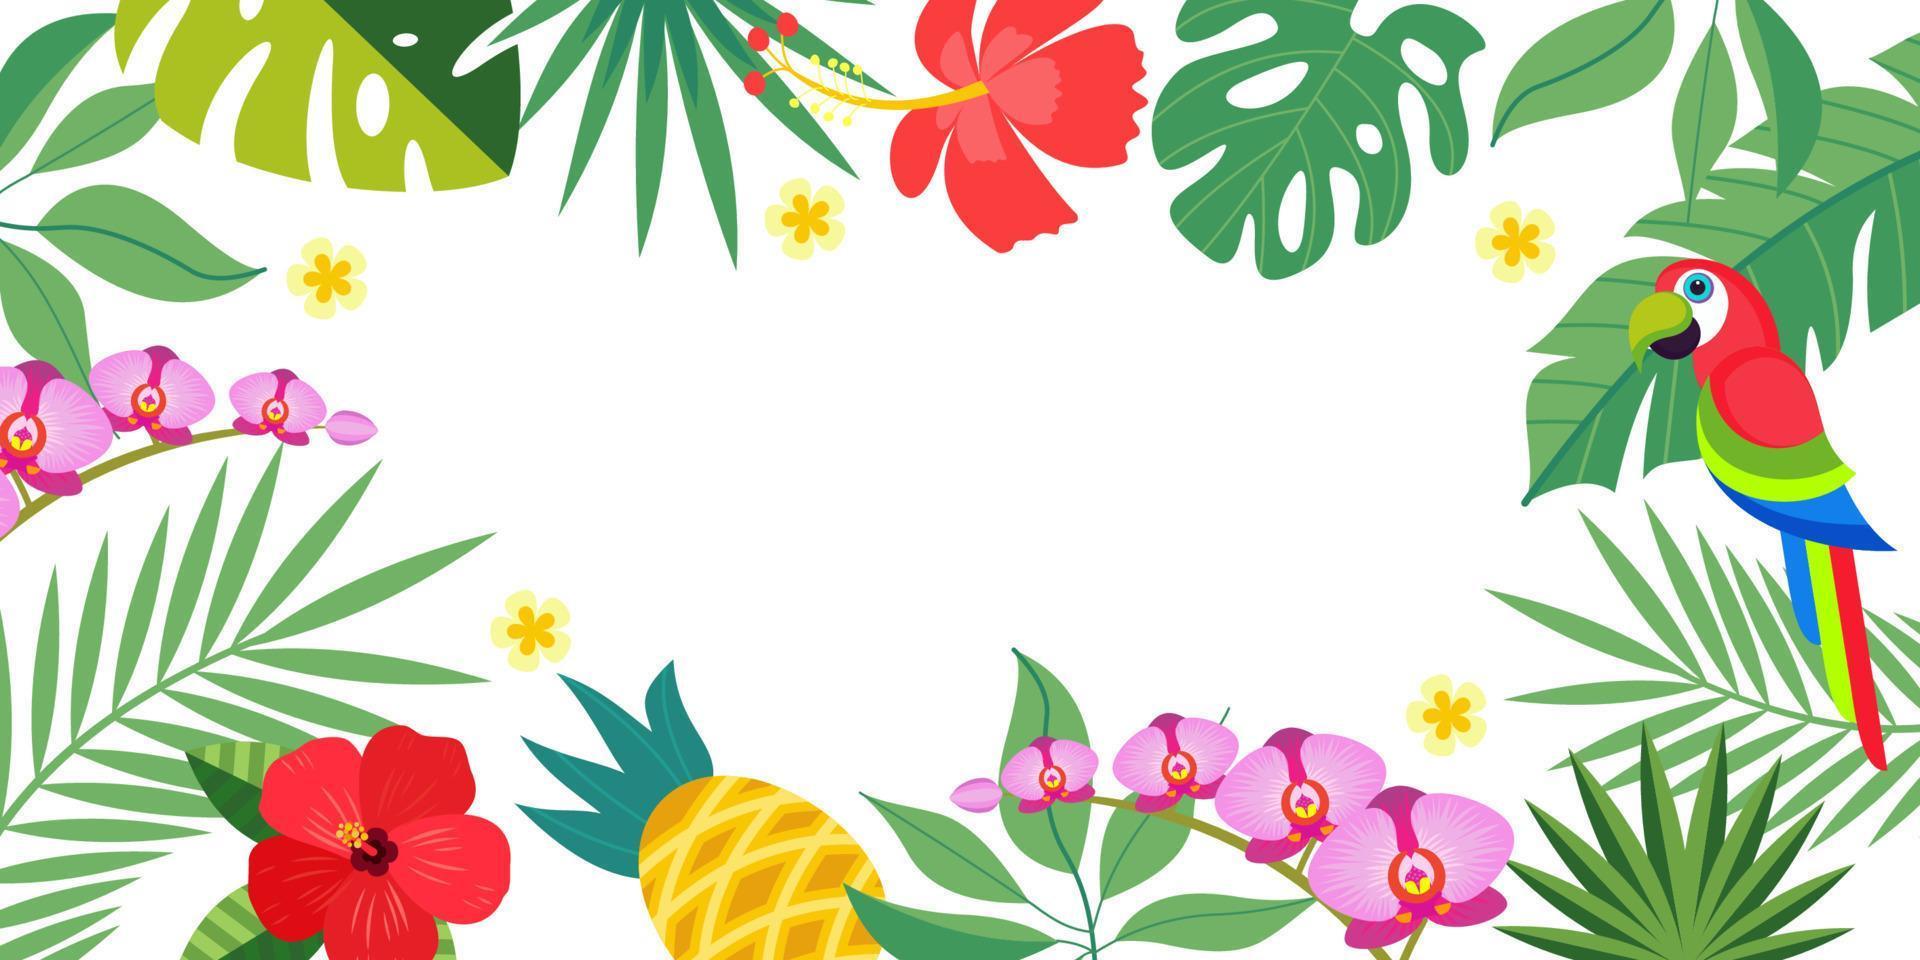 sfondo tropicale luminoso con foglie di palma tropicali, pappagallo e fiori. illustrazione vettoriale con uno spazio vuoto per il testo.